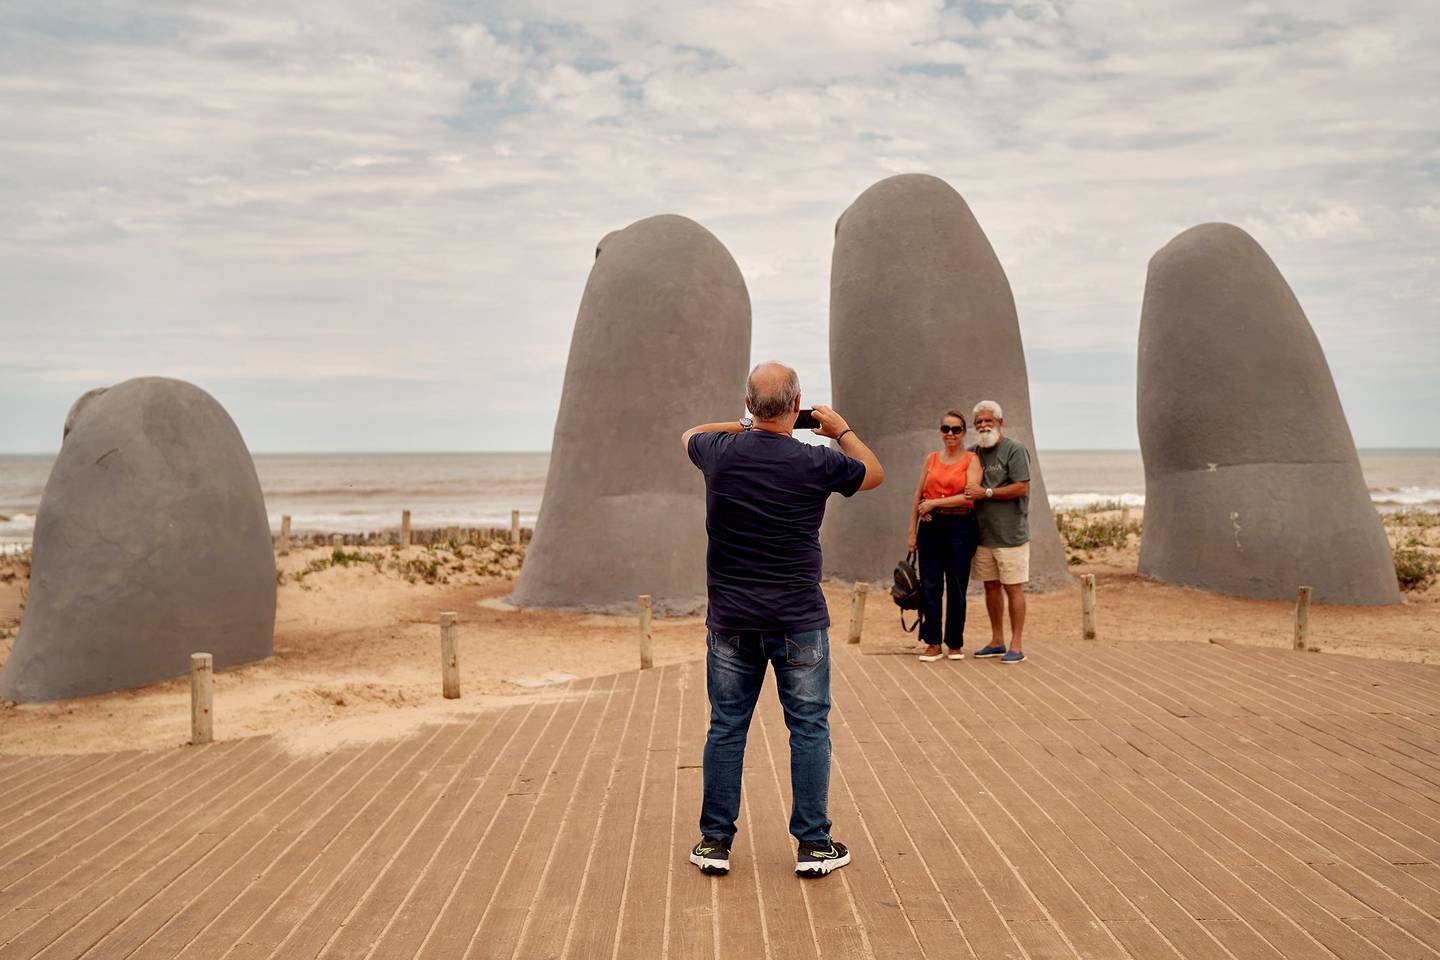 La icónica escultura de Los Dedos, en la península, al inicio de la Playa Brava. Fotografía: Ana Ferreira/Bloomberg